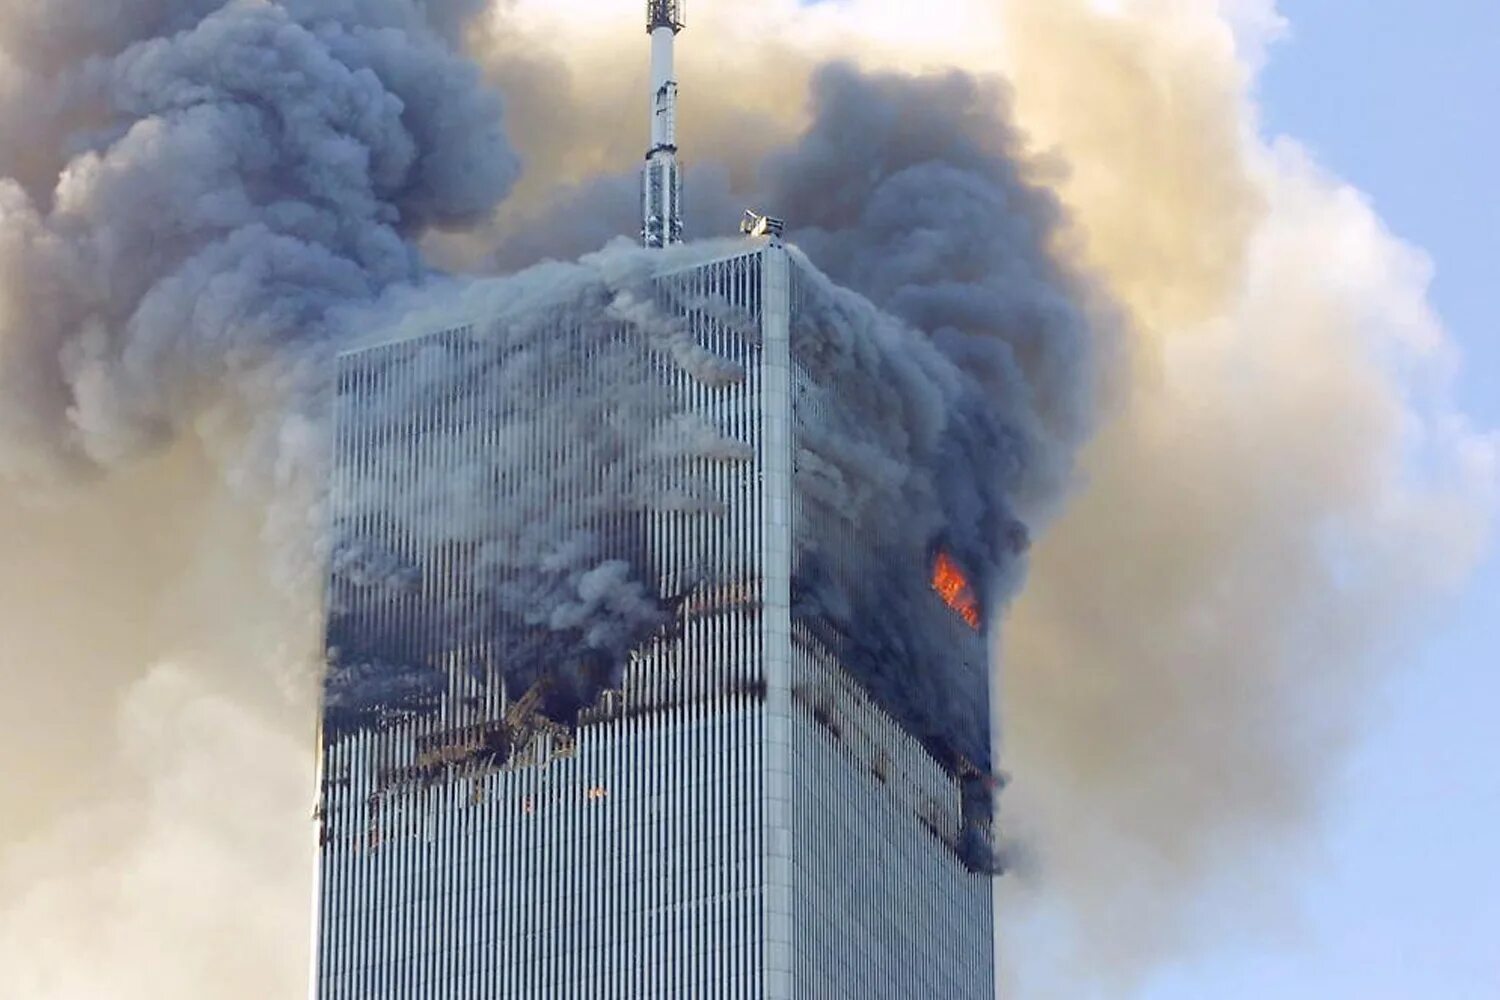 Башни Близнецы в Нью-Йорке 11 сентября. ВТЦ Нью-Йорк 2001. Башни ВТЦ 11 сентября 2001. Северная башня ВТЦ 11 сентября. Теракты 11 сентября 2001 года организация